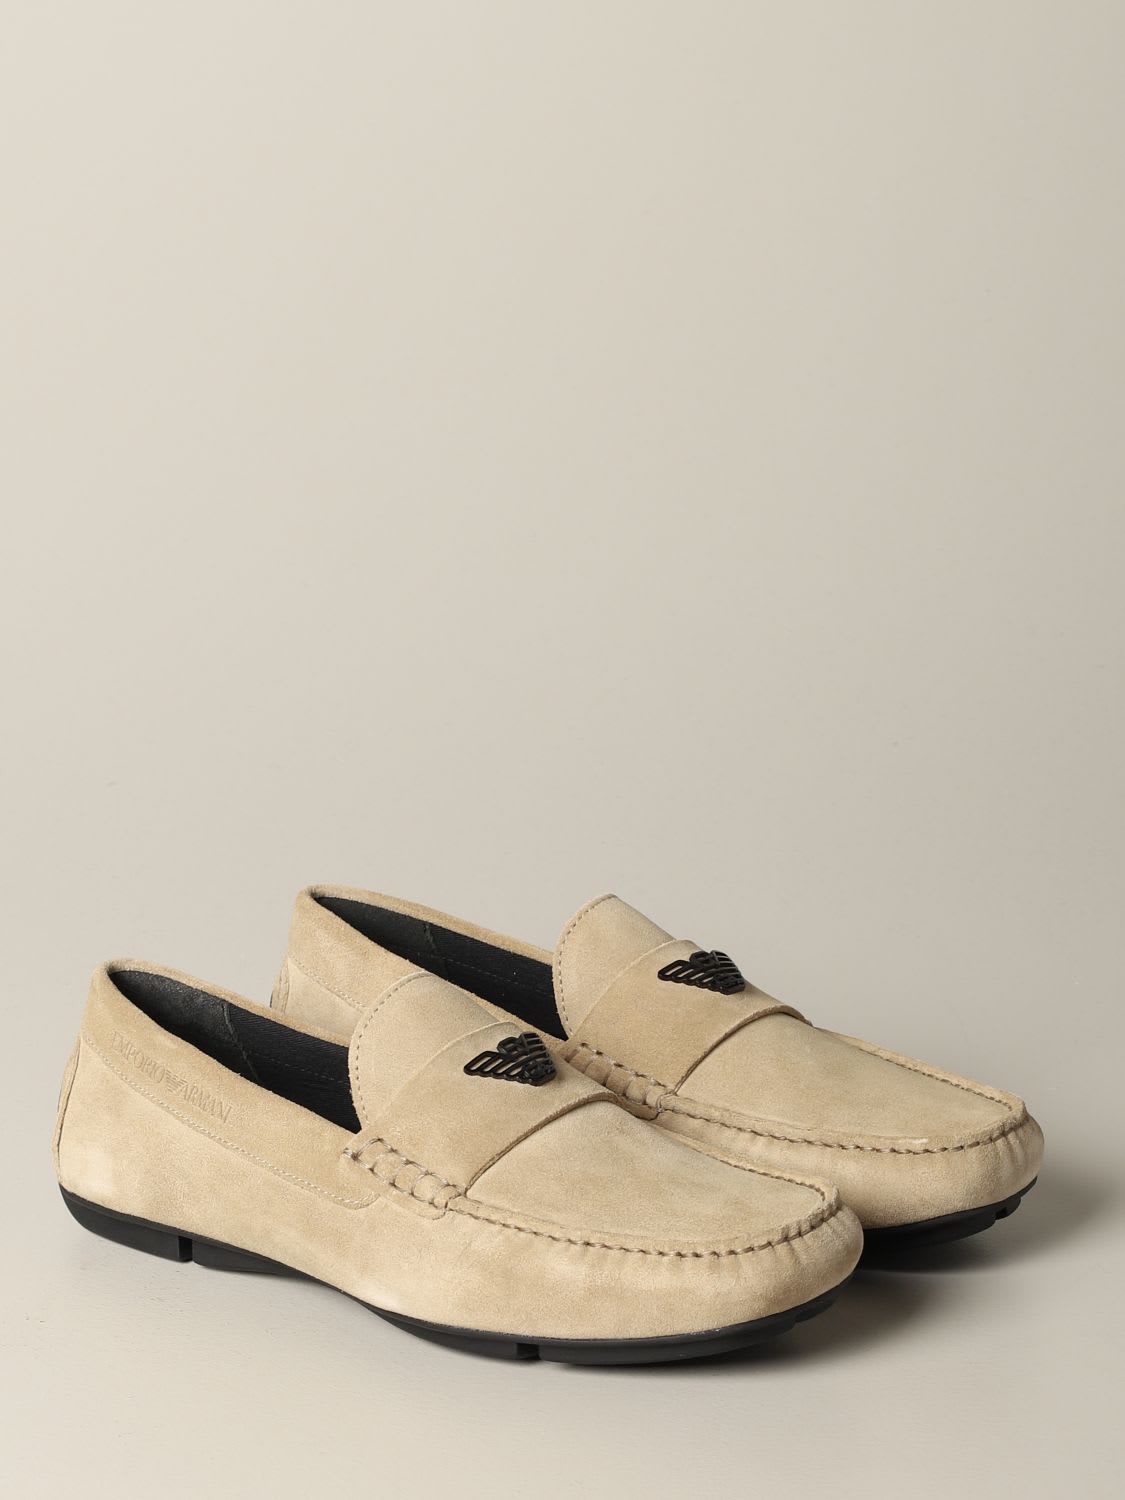 armani loafers sale